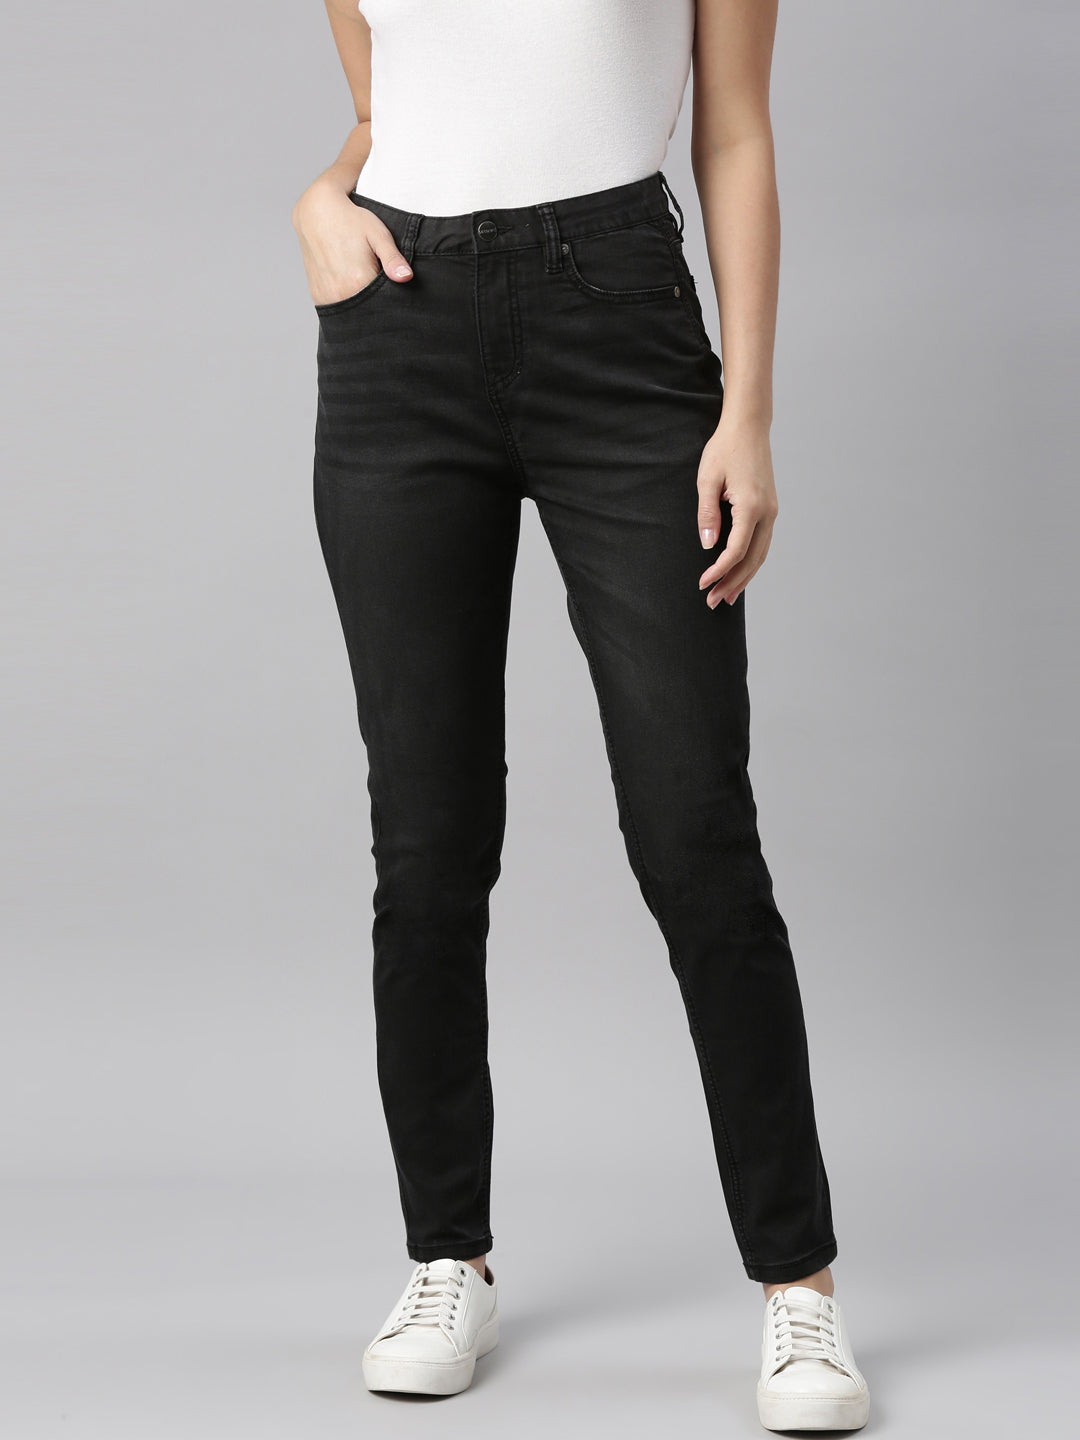 Buy Black Skinny Jeggings - 22, Jeans